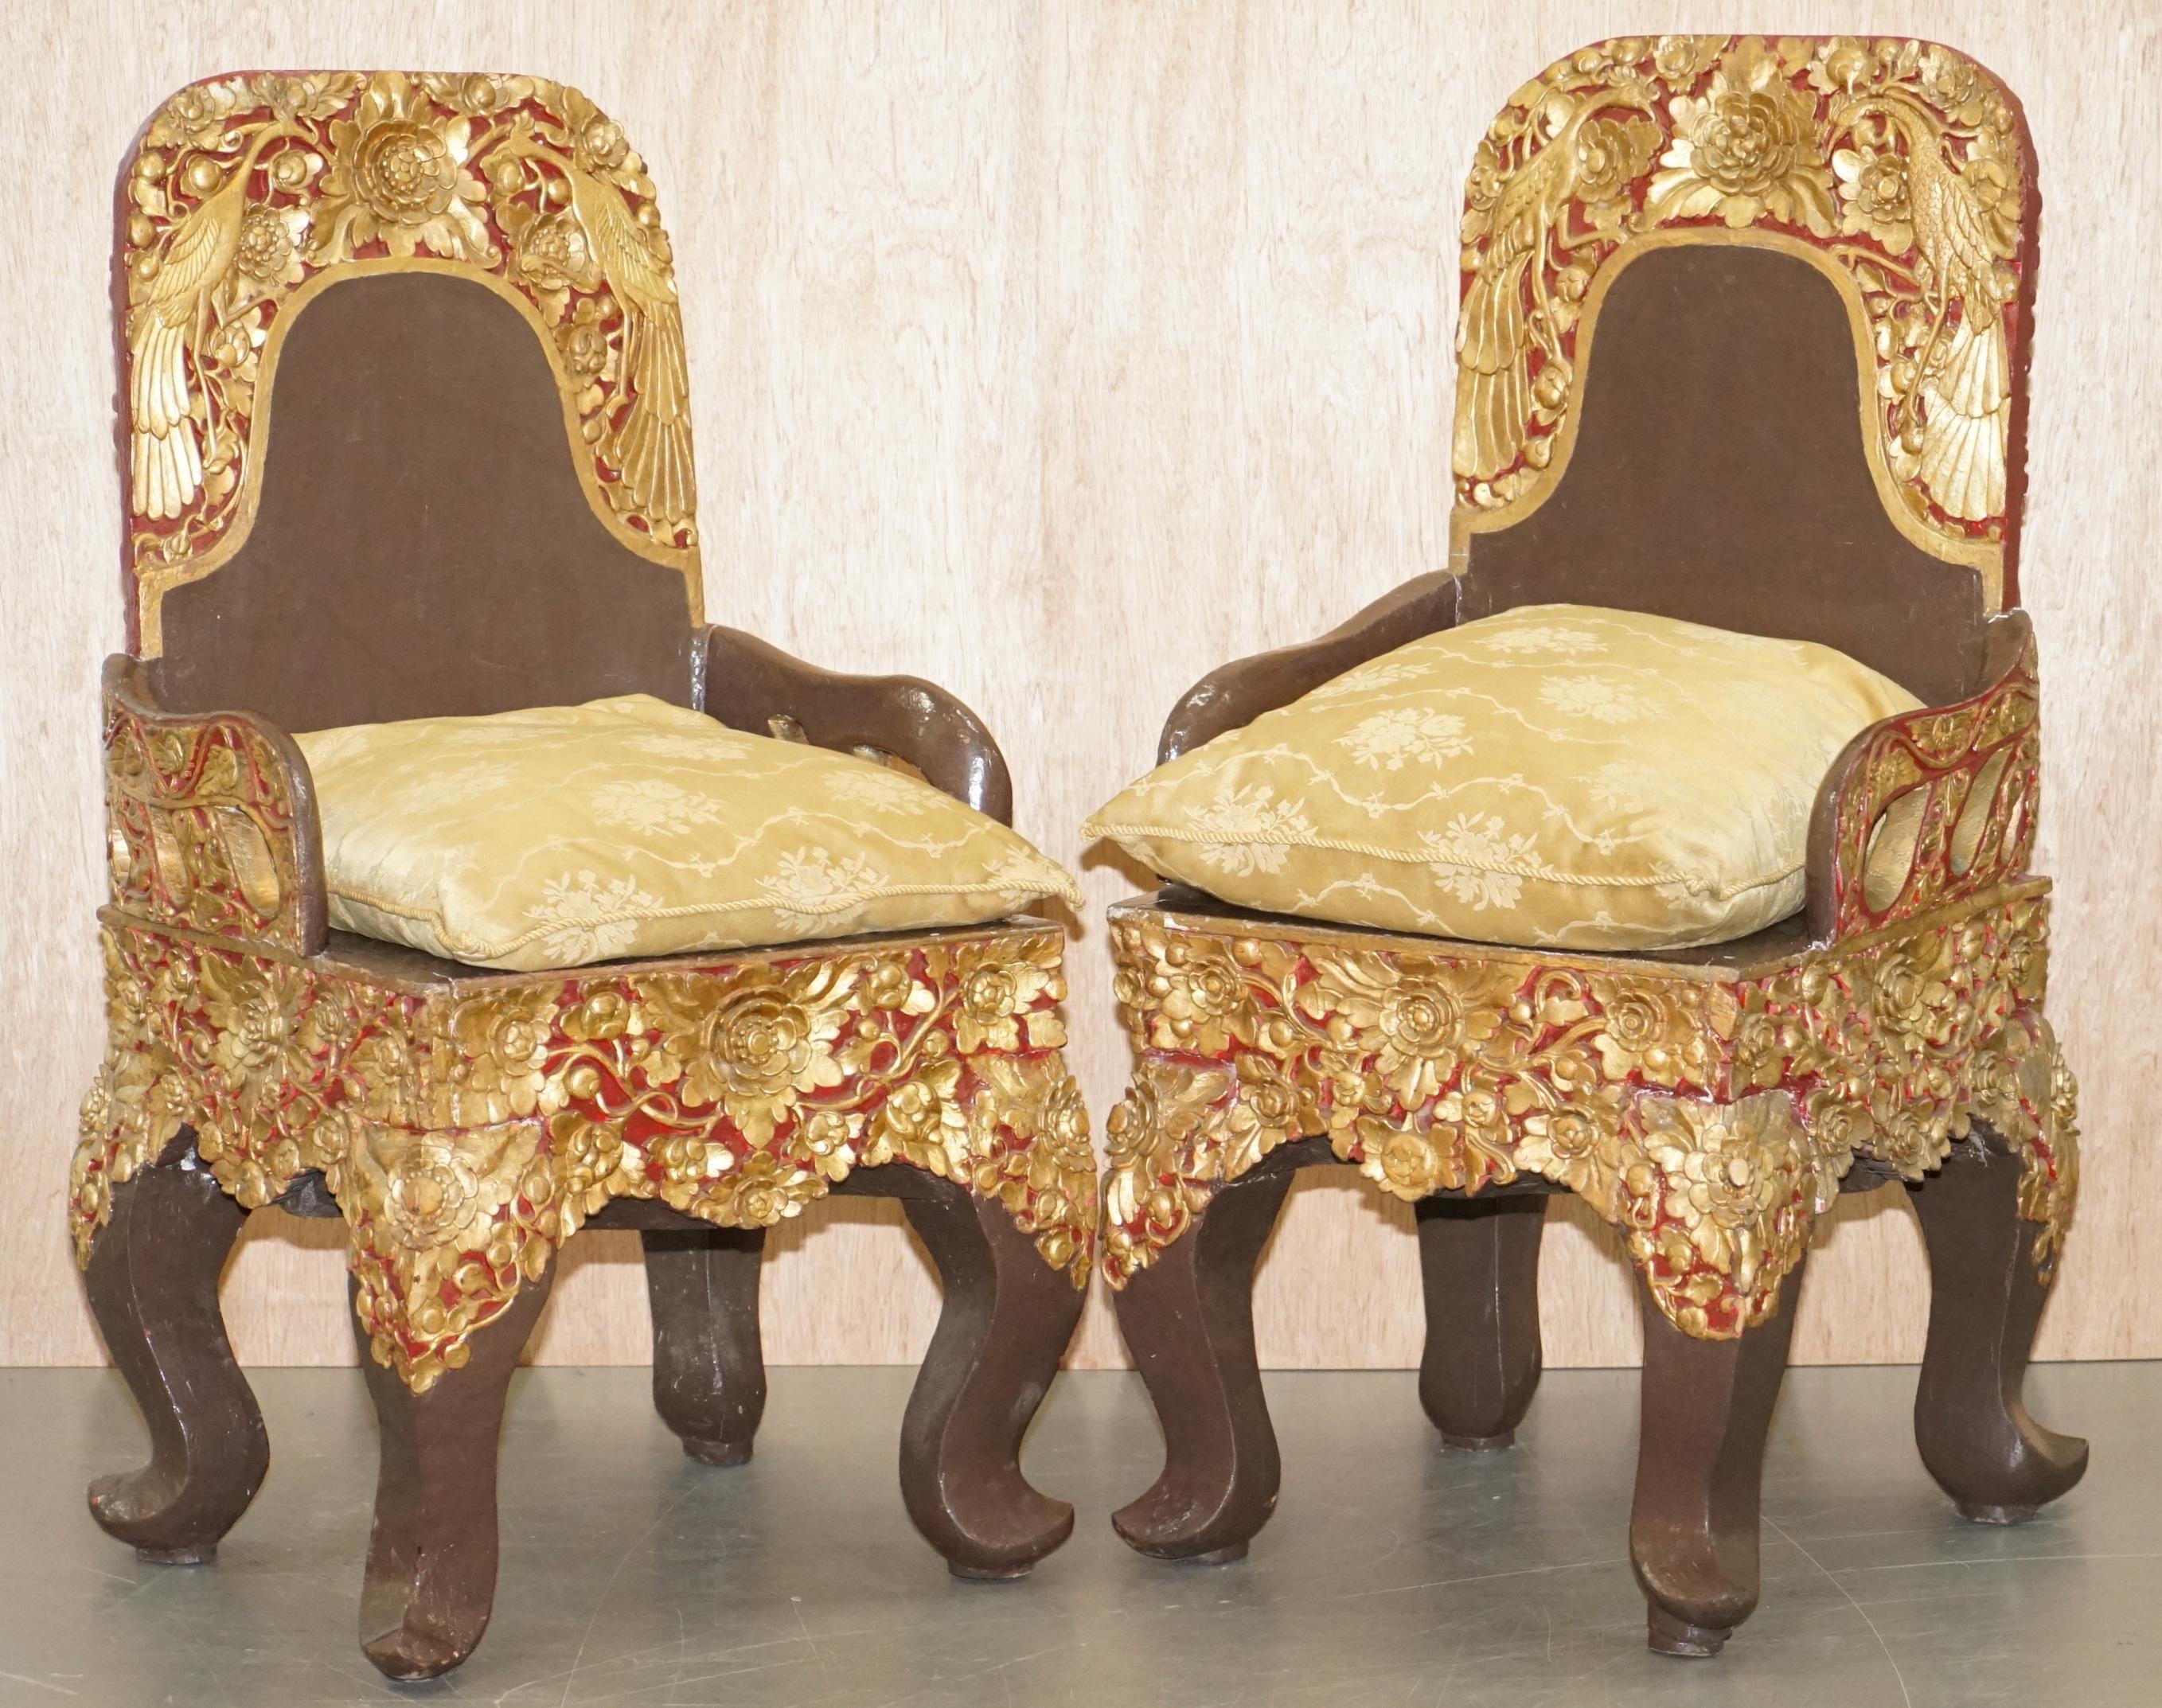 Nous sommes ravis d'offrir à la vente cette paire extrêmement rare de chaises de cérémonie tibétaines originales datant d'environ 1900, avec des décorations dorées et de grandes figures moulées du dieu bouddhiste Nyingma.

Par où commencer ? Quelle